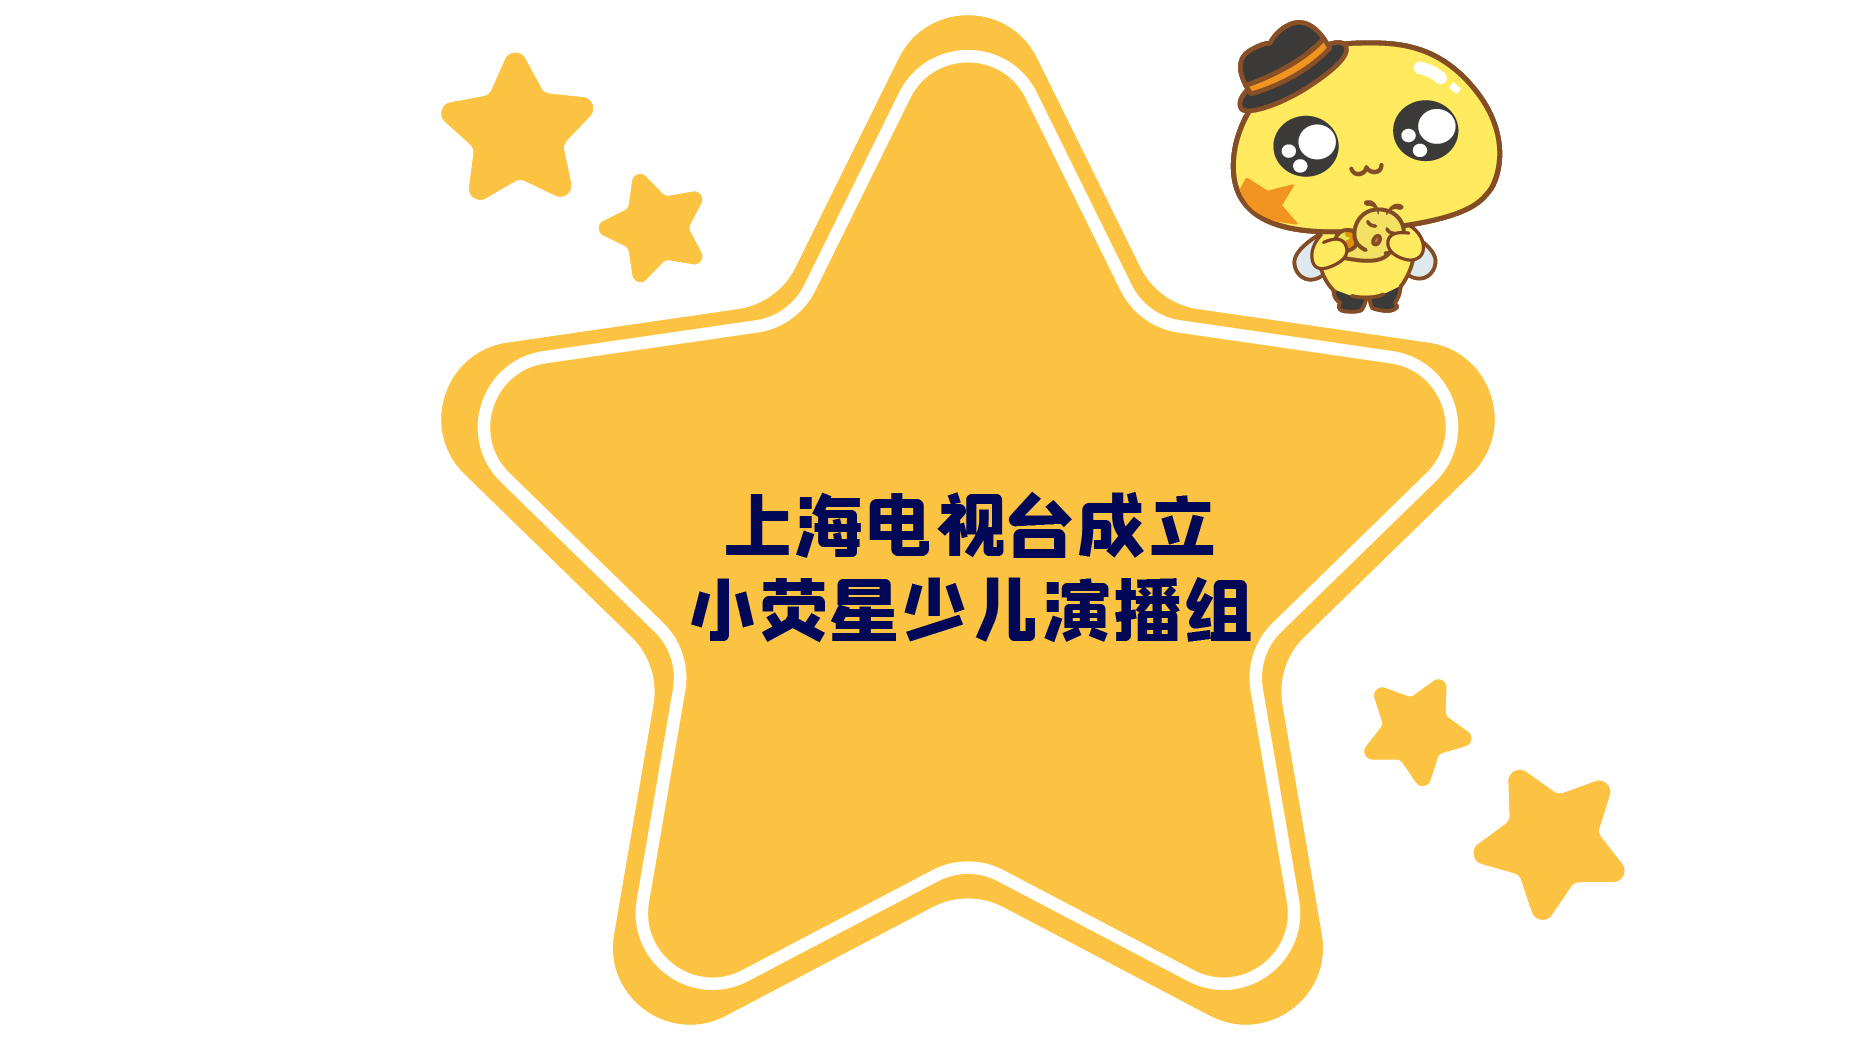 上海电视台成立小荧星少儿演播组